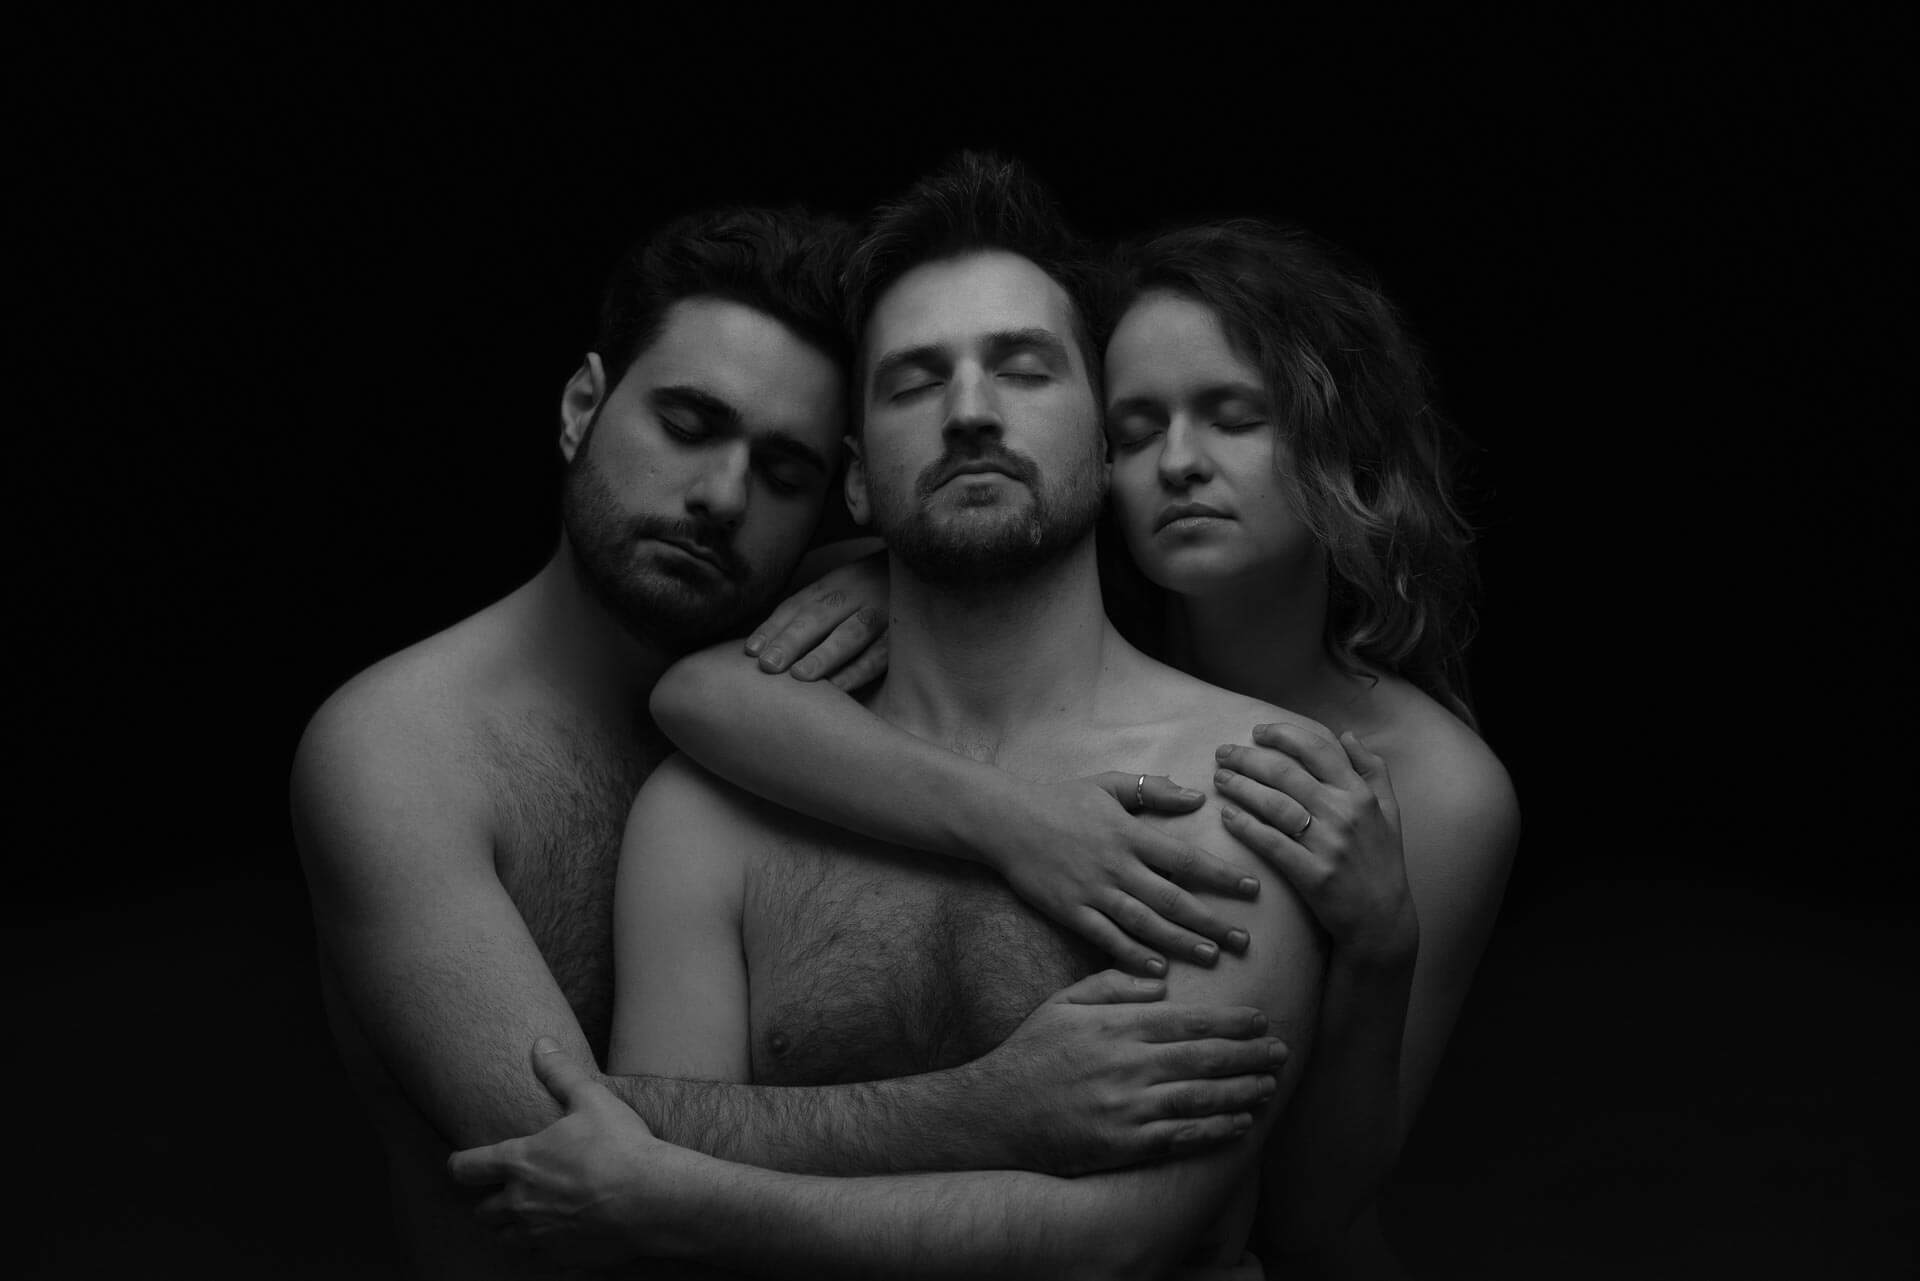 Bandfoto Pressebild der Elektropop Band GETIER, drei nackte Menschen eng umschlungen in schwarzweiß (c) Rebecca ter Braak